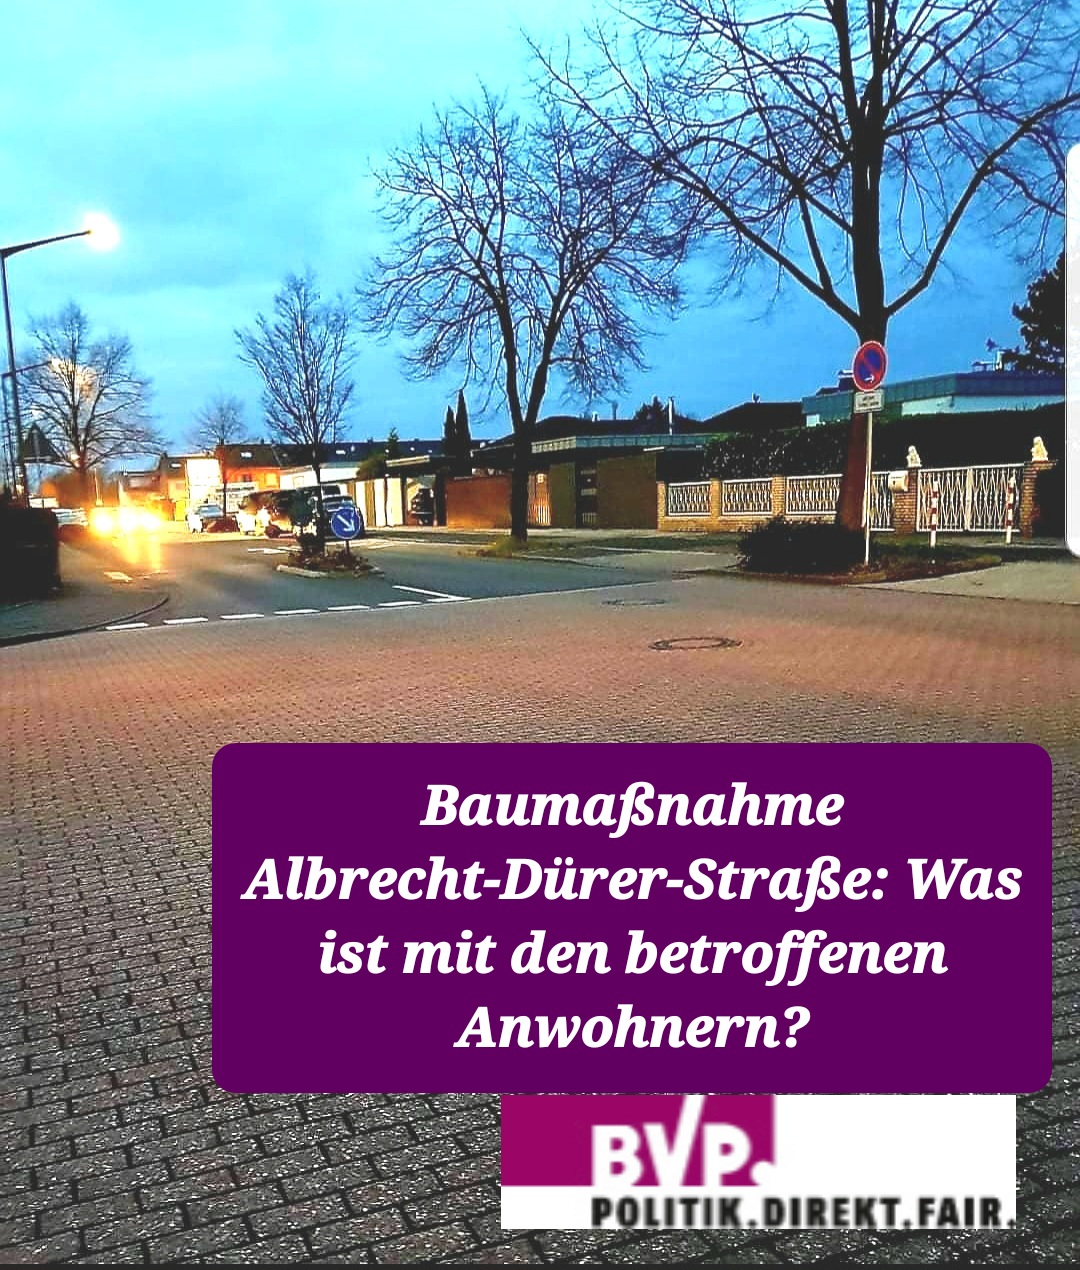 Baumaßnahme Albrecht-Dürer-Straße: Was ist mit den betroffenen Anwohnern? BVP hakt nach!